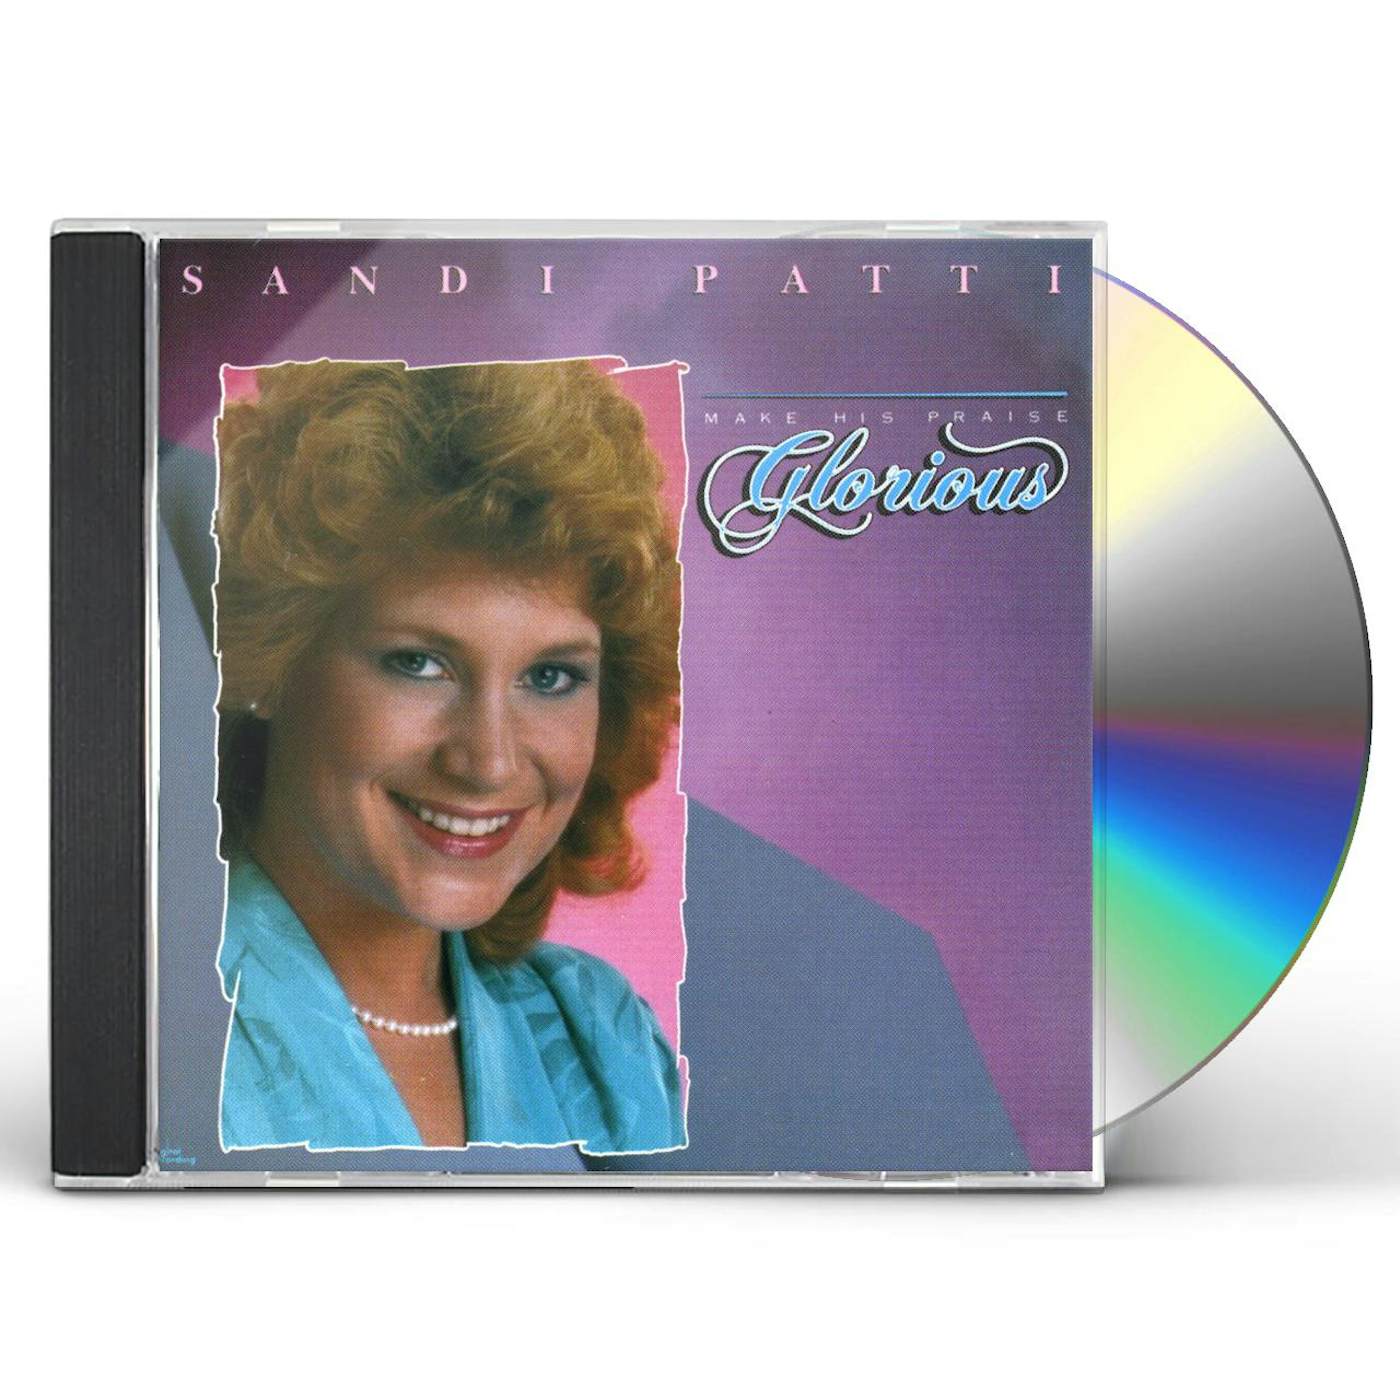 Sandi Patty MAKE PRAISE GLORIOUS CD